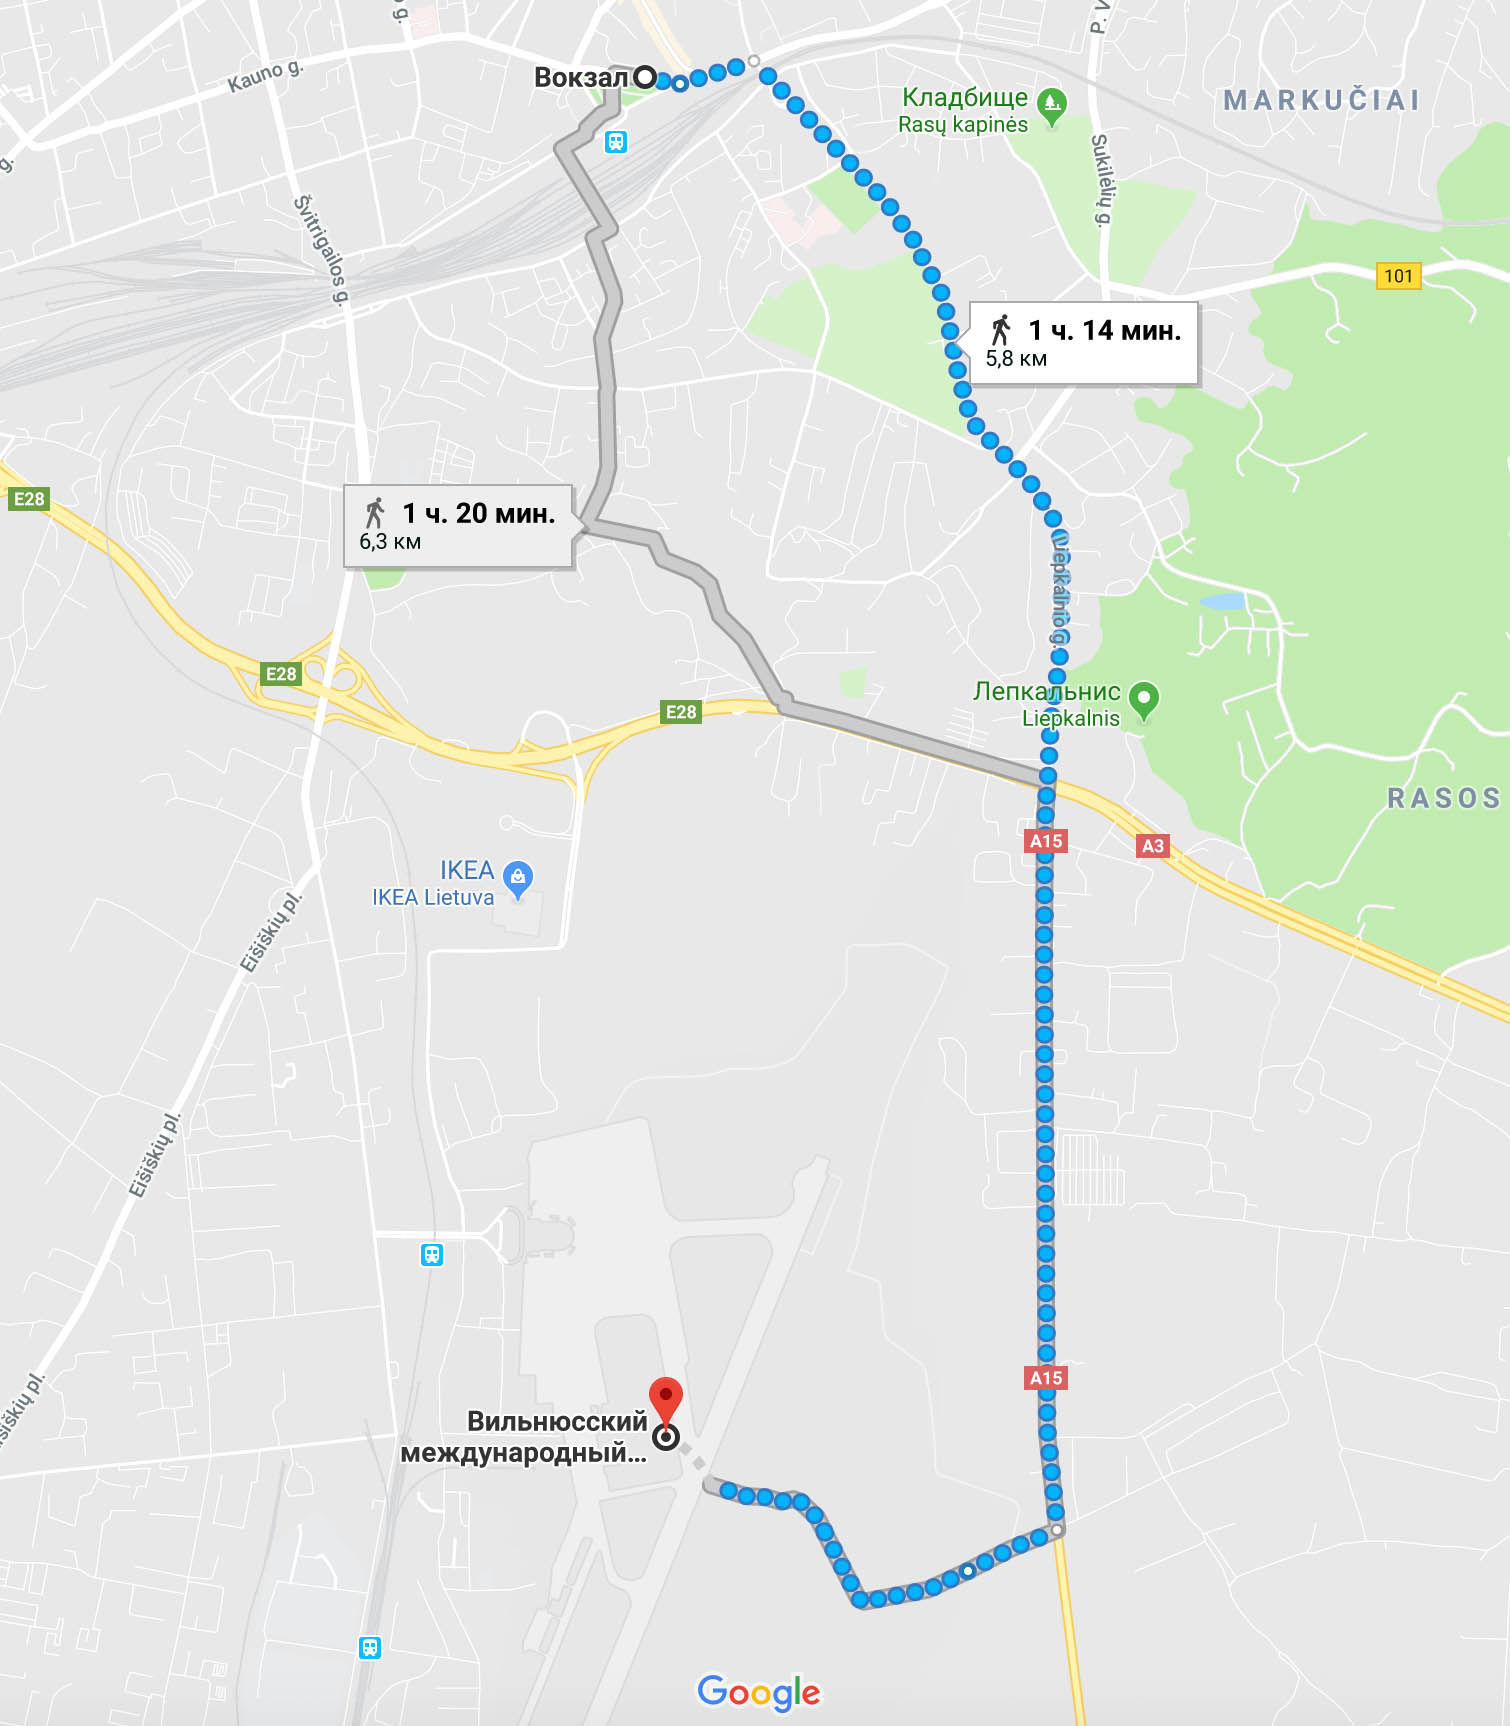 Гугл считает, что пешком дорога до аэропорта в Вильнюсе займет 1 час 14 минут, но в хорошую погоду я трачу на это меньше часа, если идти быстрым шагом